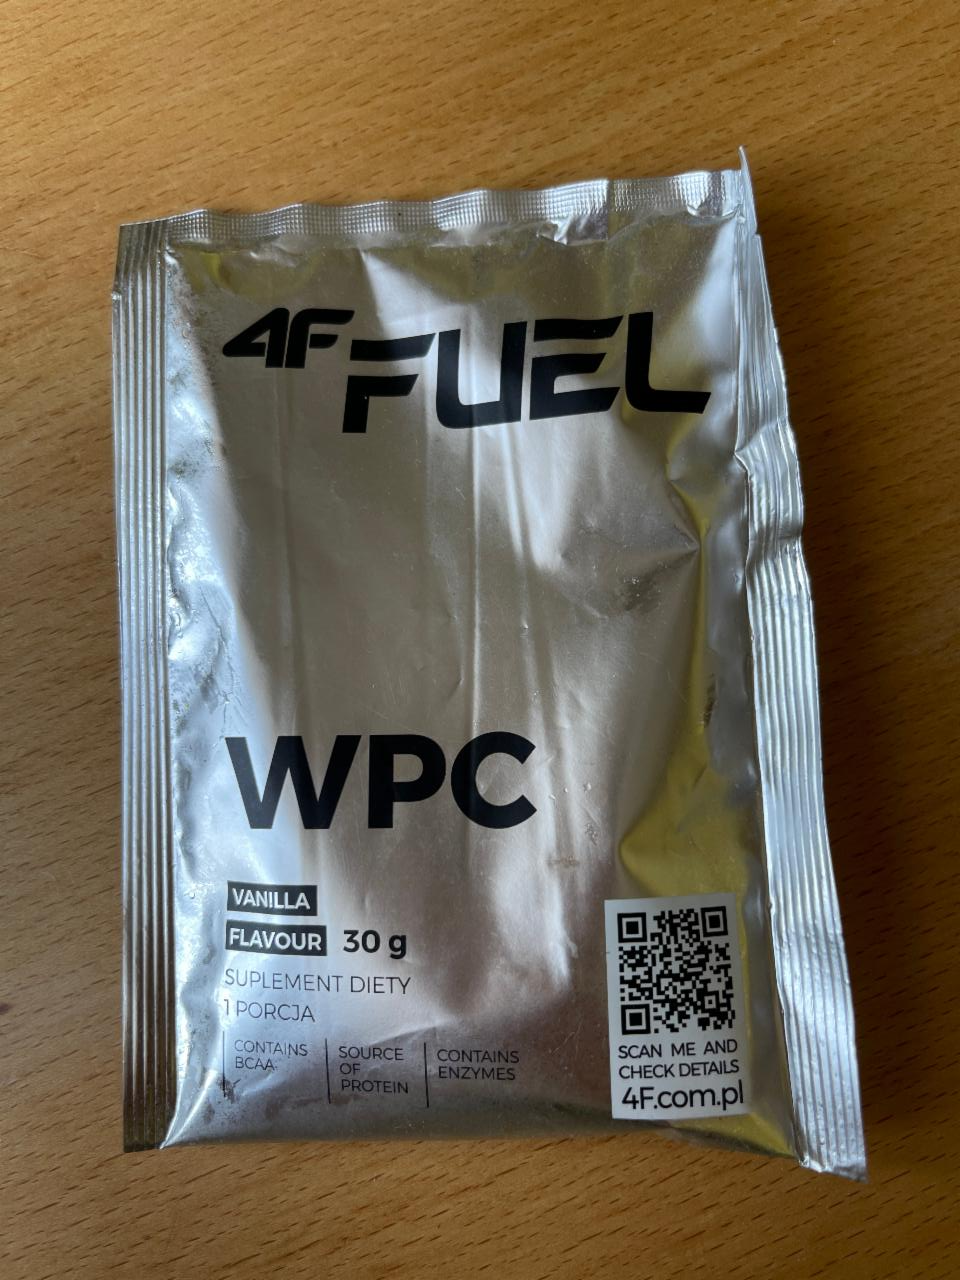 Фото - Концентрат сывороточного белка ванильный вкус WPC 4F Fuel